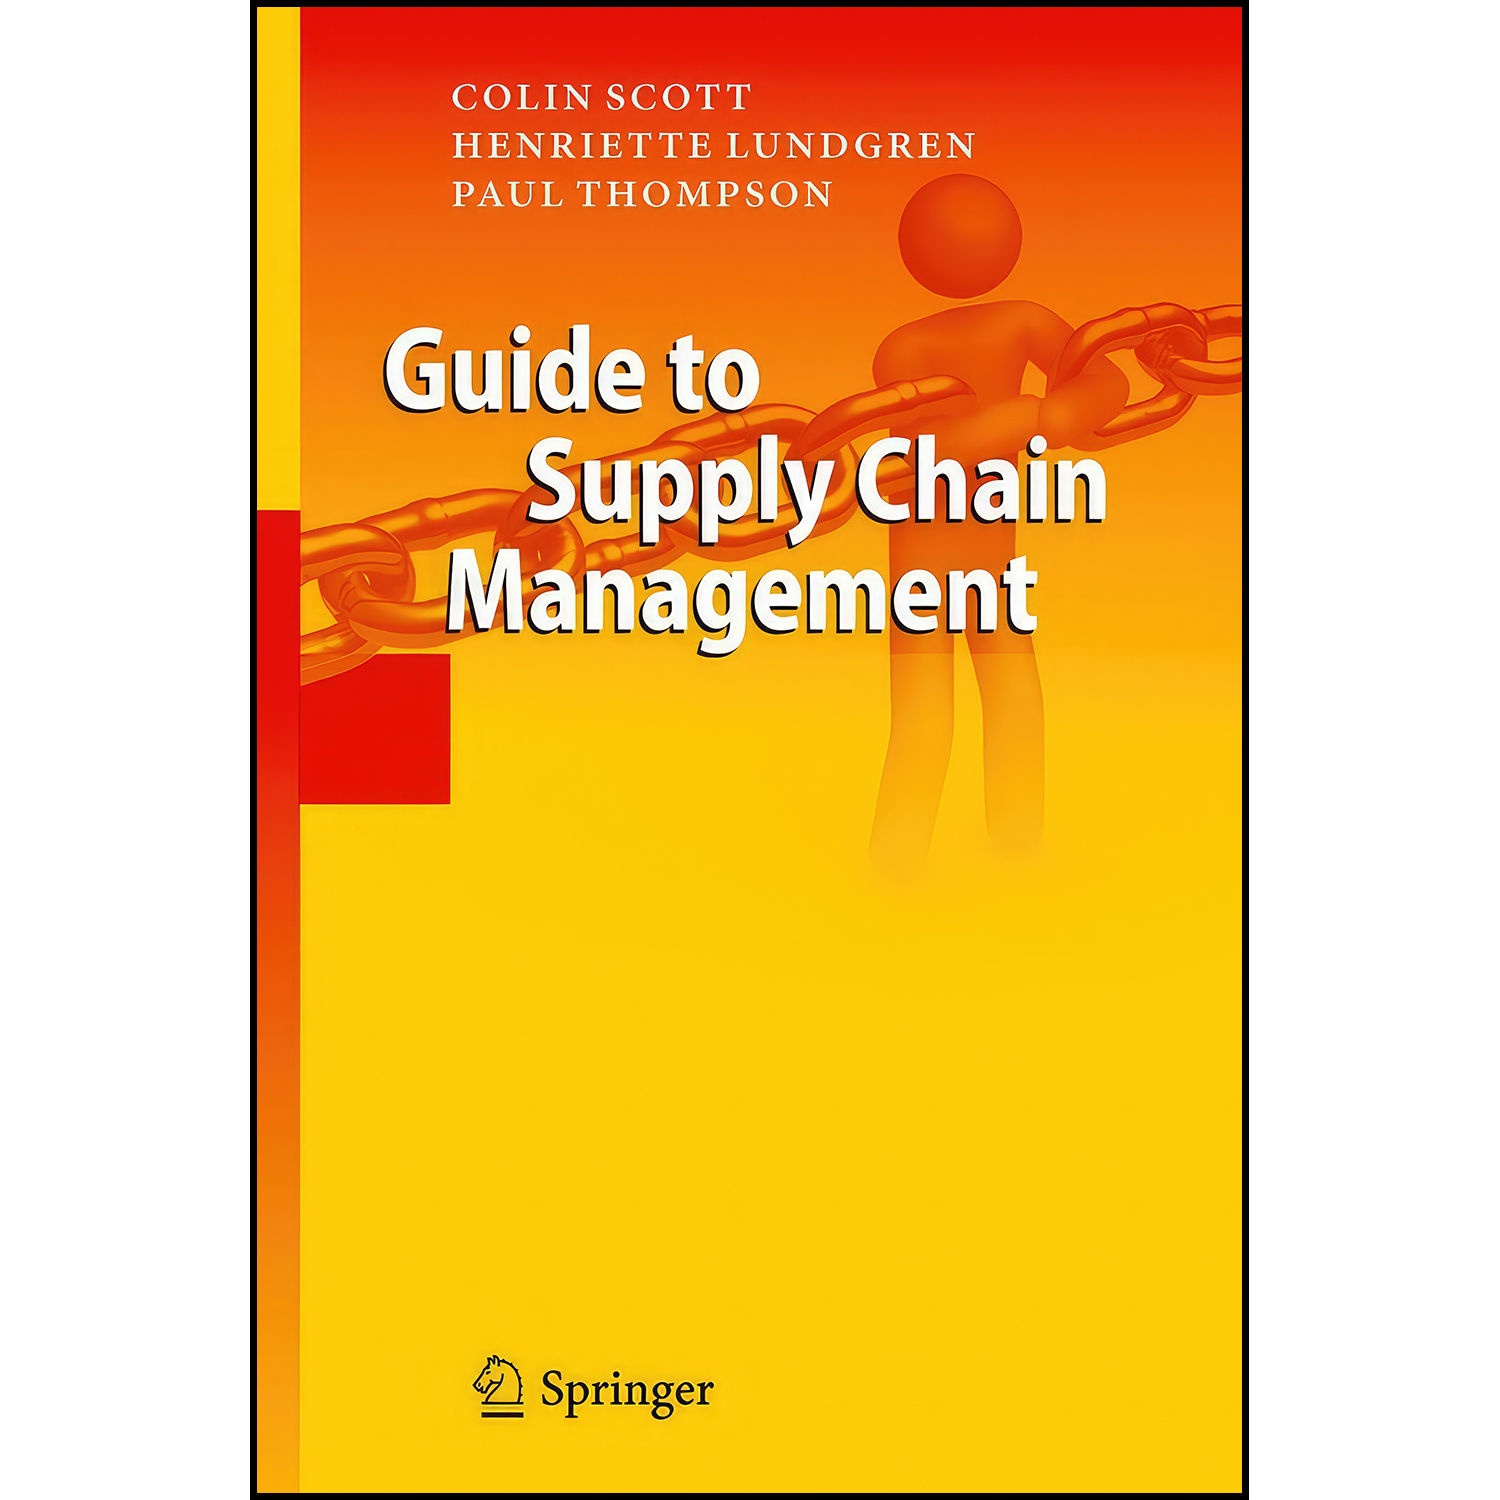 کتاب Guide to Supply Chain Management اثر Colin Scott and Paul Thompson انتشارات Springer